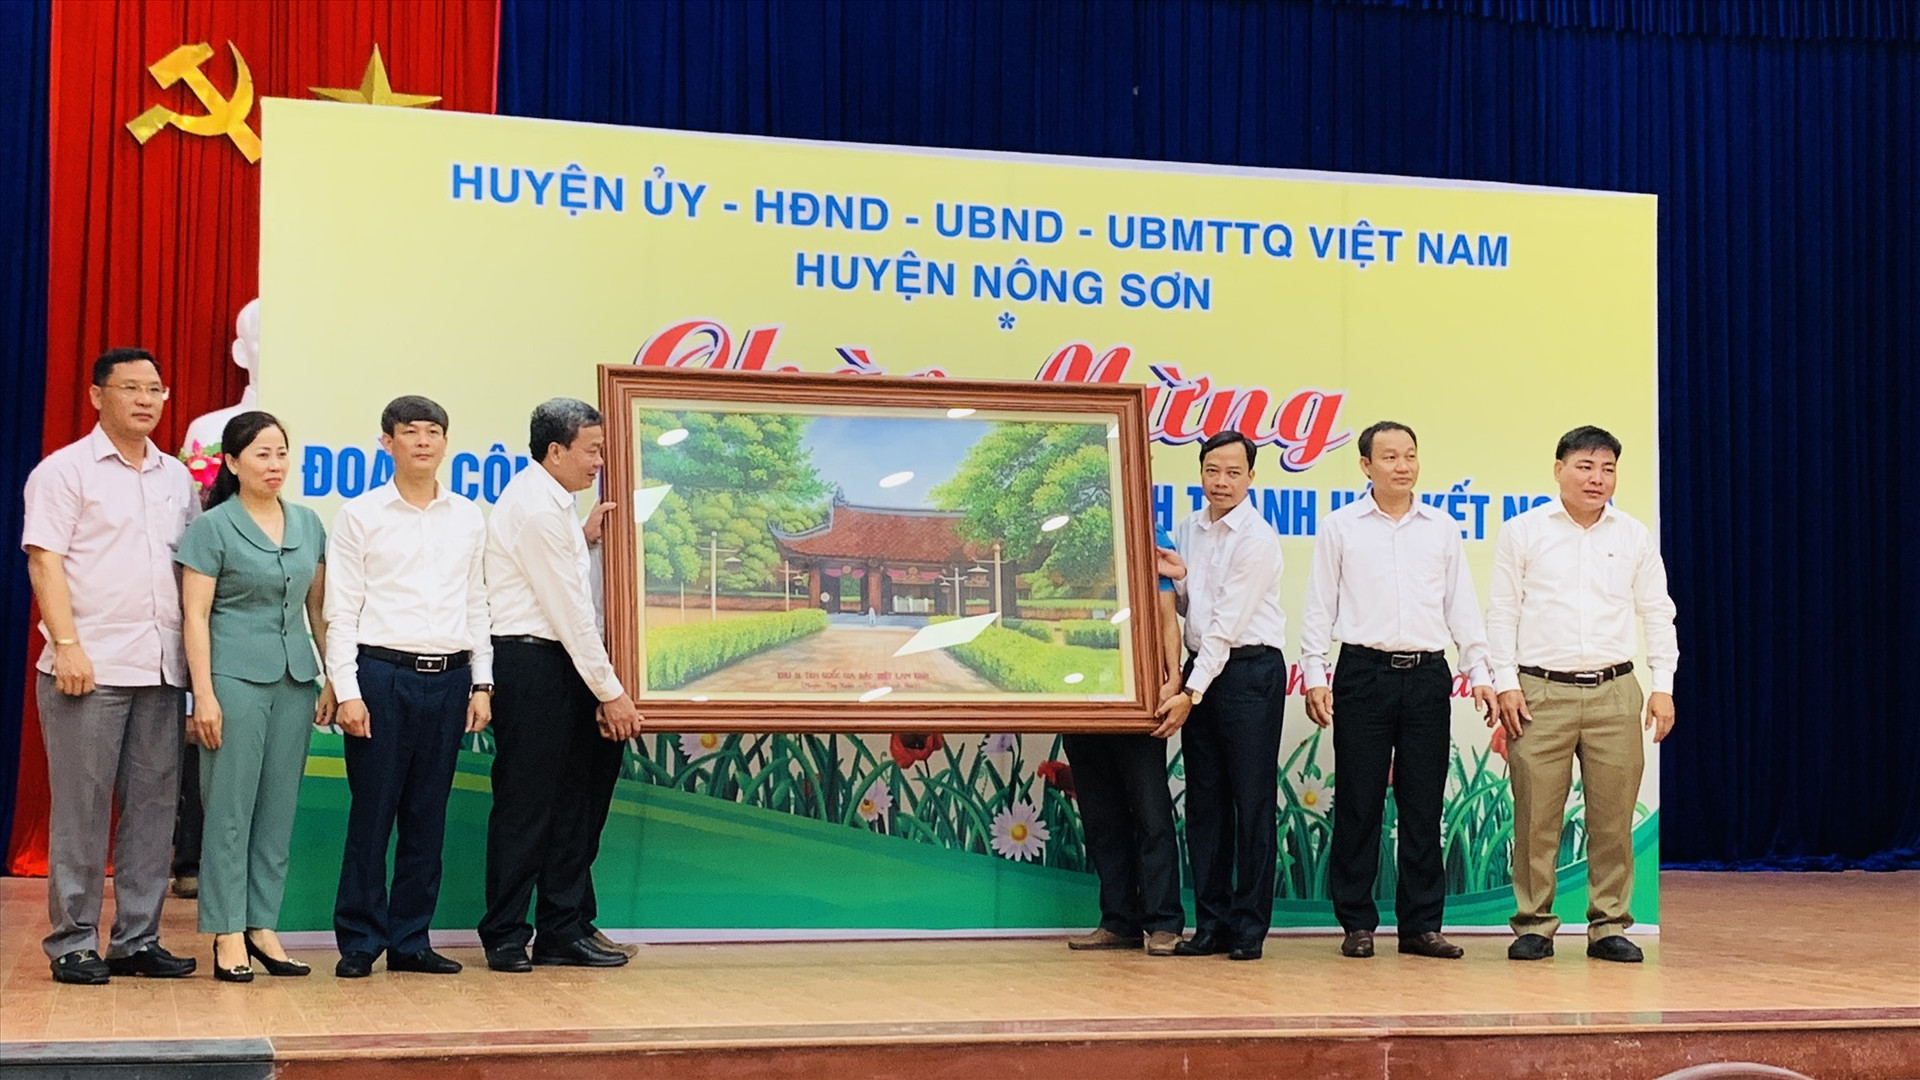 Lãnh đạo huyện Thọ Xuân (Thanh Hóa) tặng bức tranh đá Khu di tích lịch sử Quốc gia Đặc biệt Lam Kinh cho huyện Nông Sơn. Ảnh MINH THÔNG